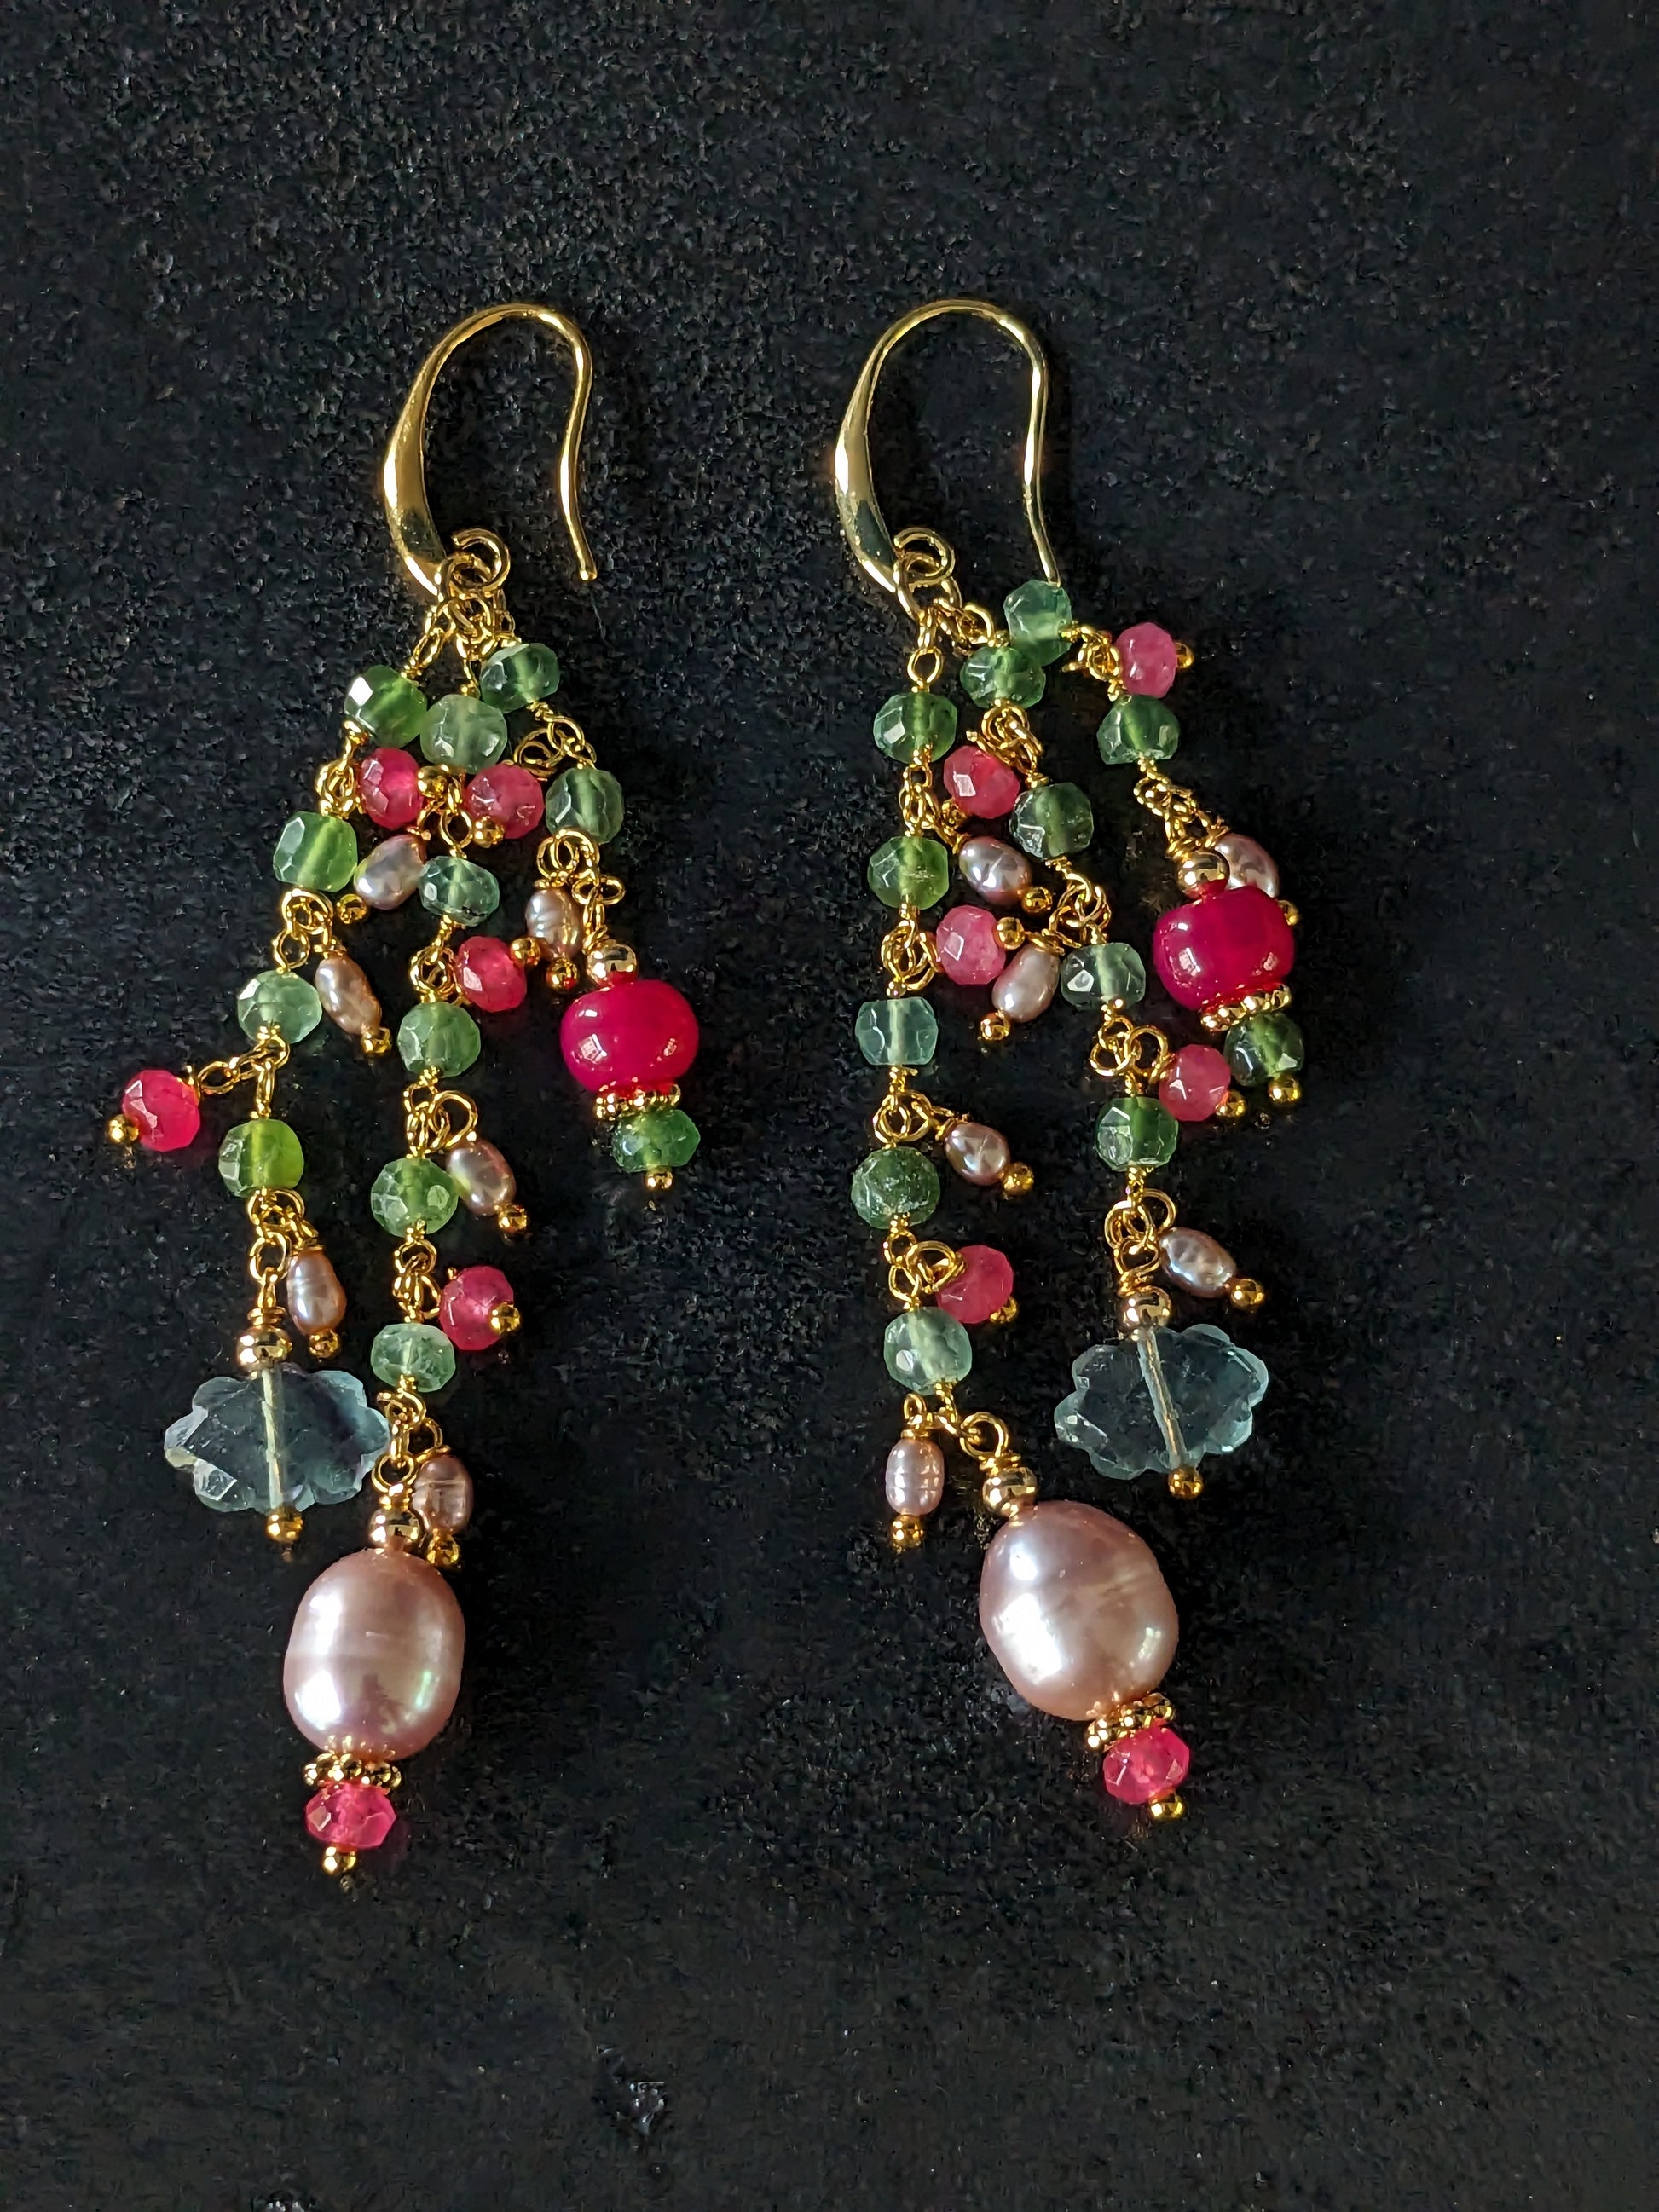 Boucles d'oreilles Meerabai faites à la main, composées de pierres fines colorées et de perles d'eau douce, suspendues à une chainette plaquée or avec Chrysoprase